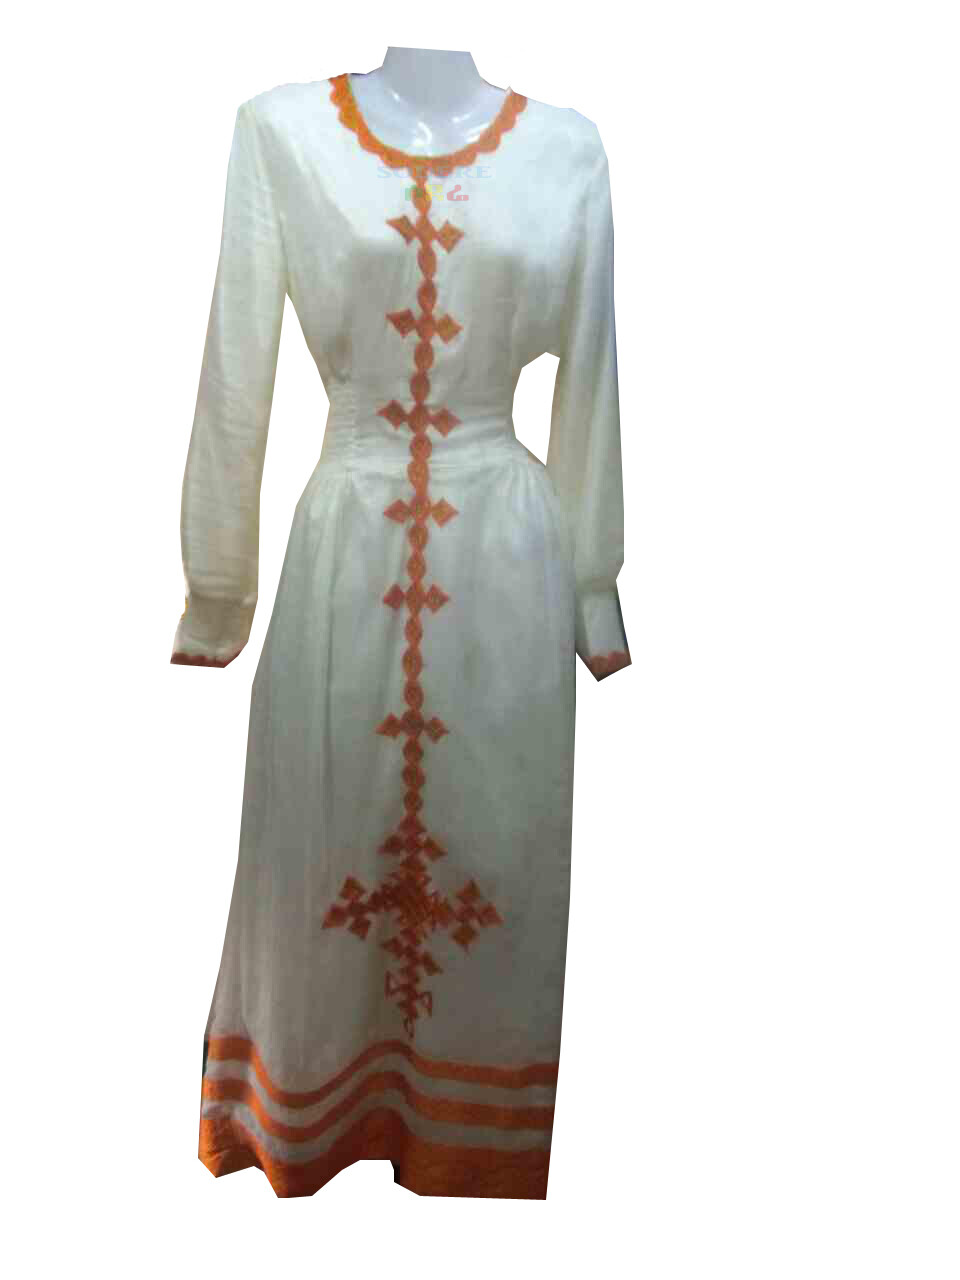 ረዘም ያለ የሀበሻ ቀሚስ / Ethiopian Traditional Long Dress